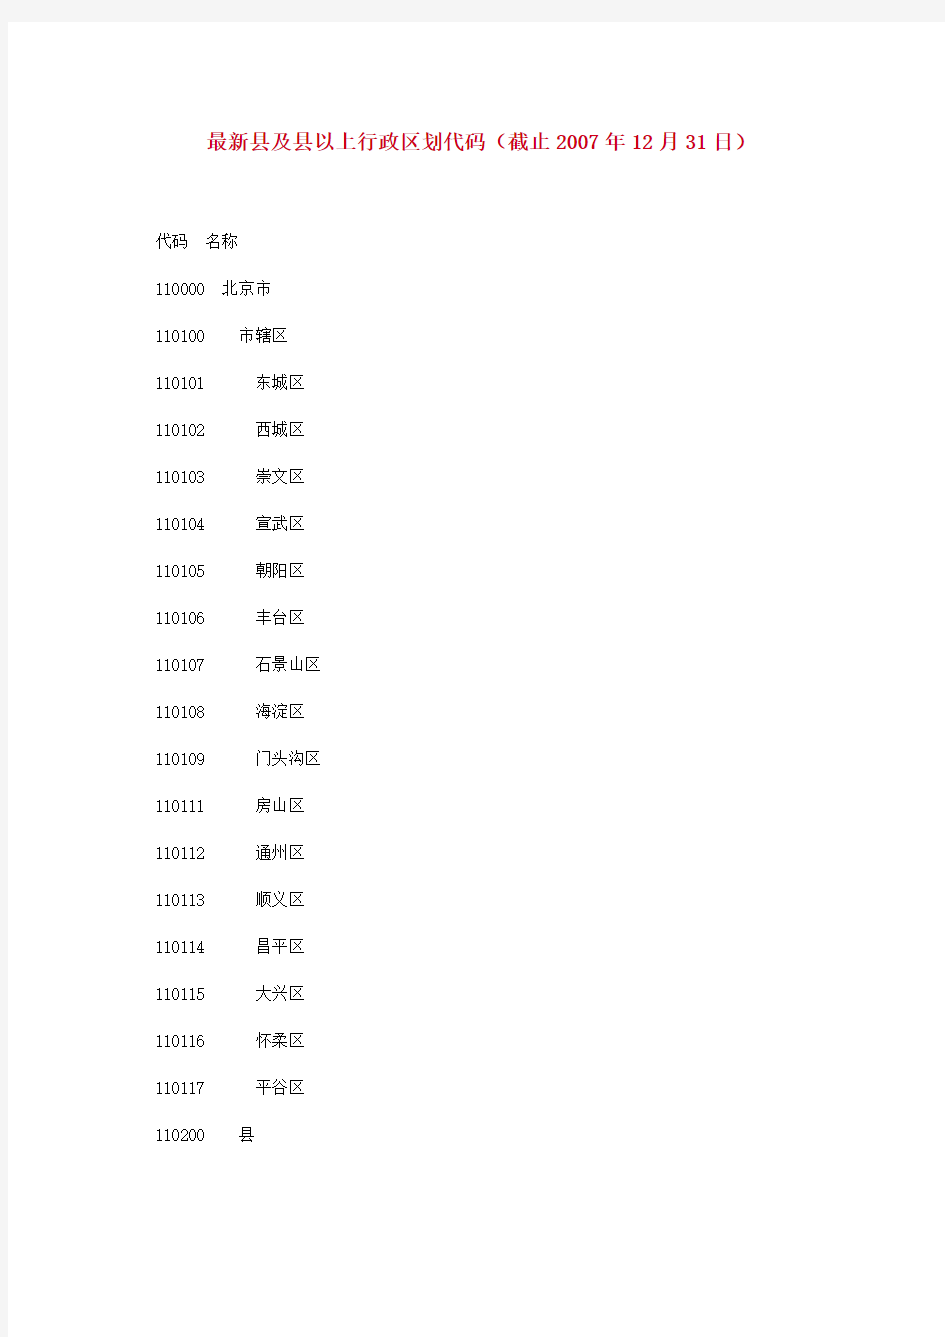 中华人民共和国行政区划代码